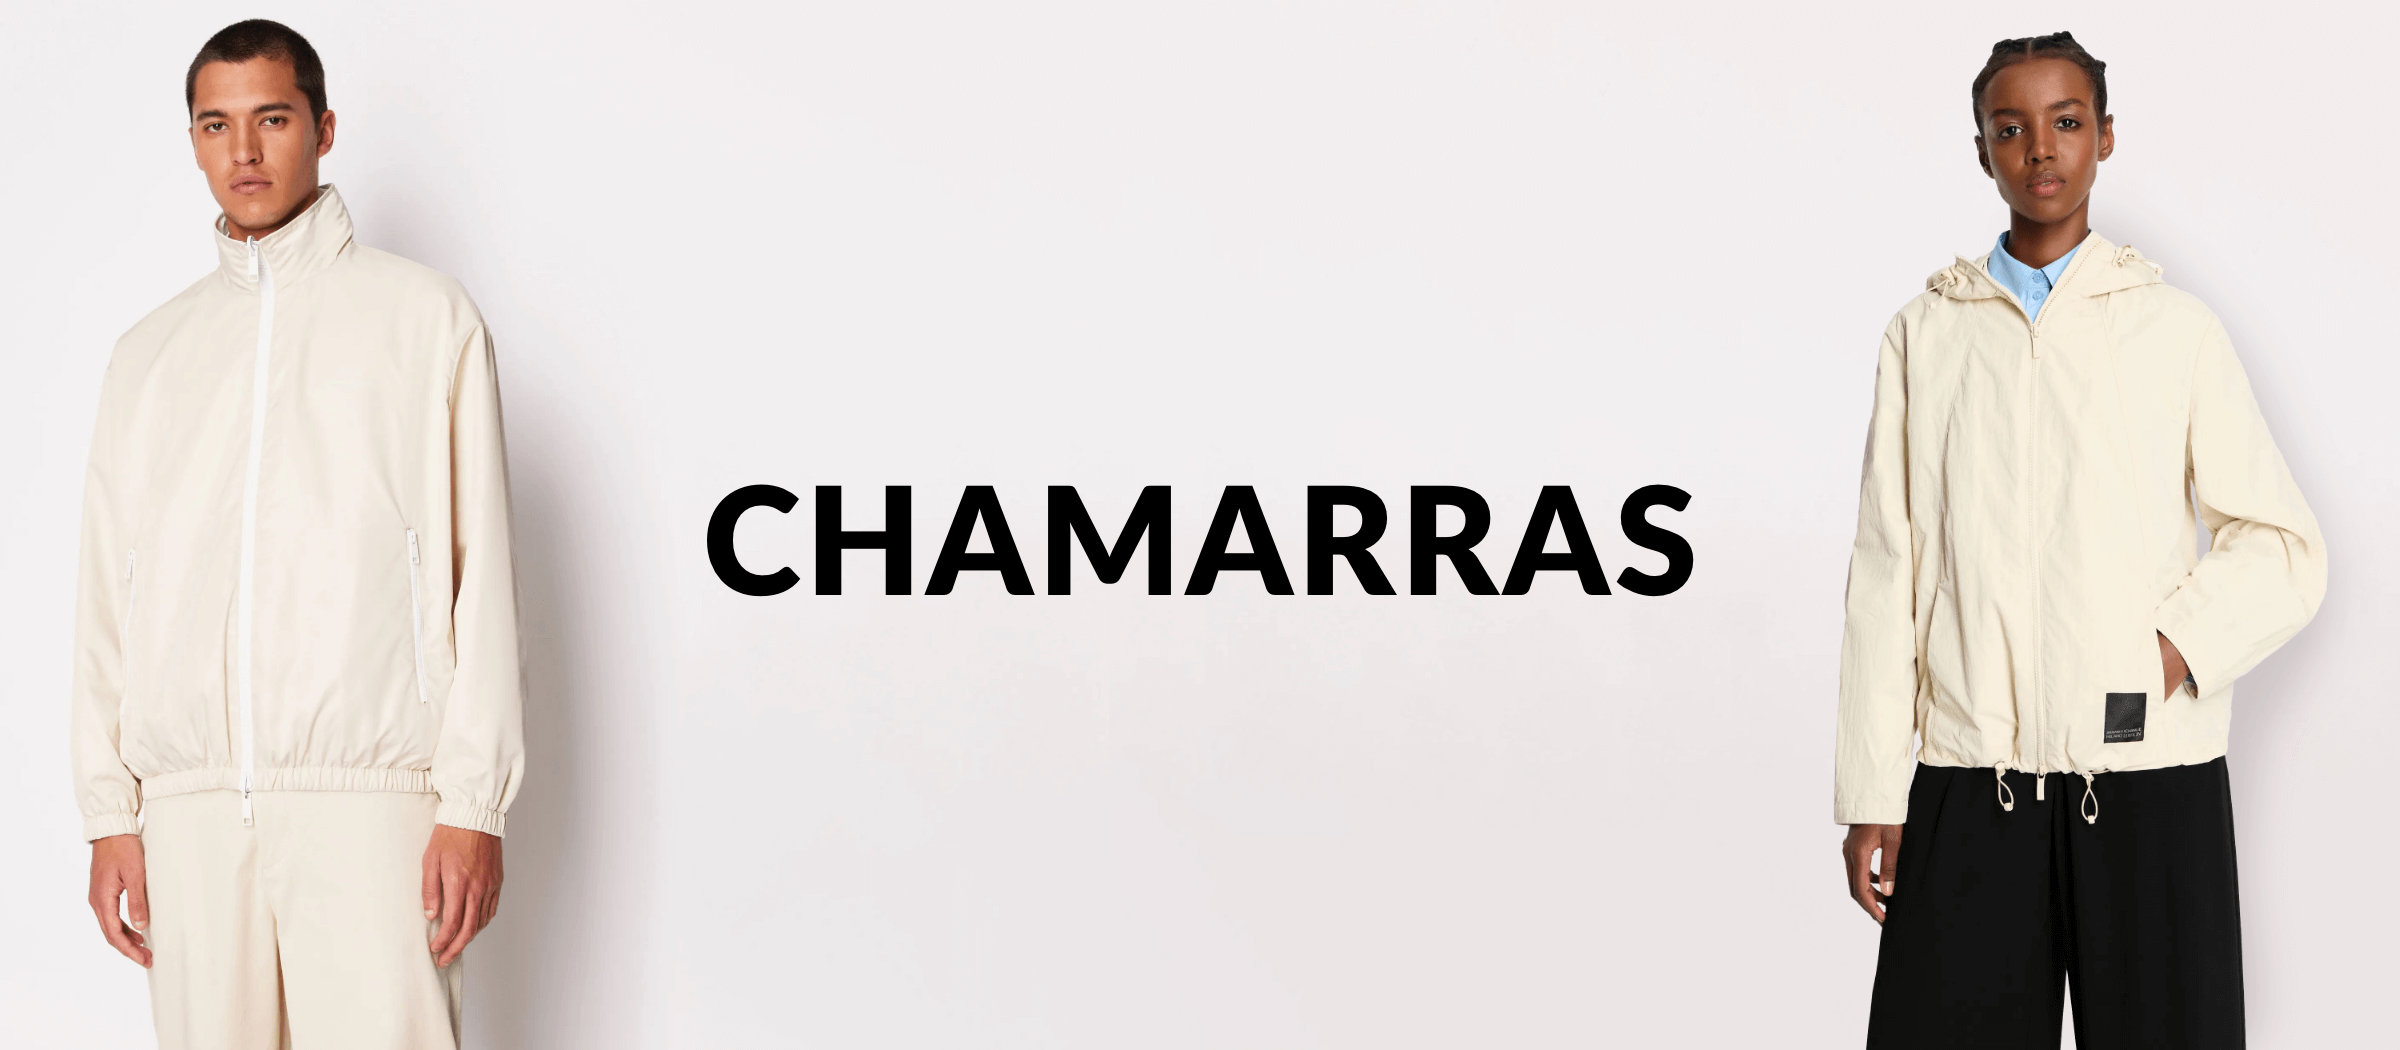 CHAMARRAS ARMANI EXCHANGE